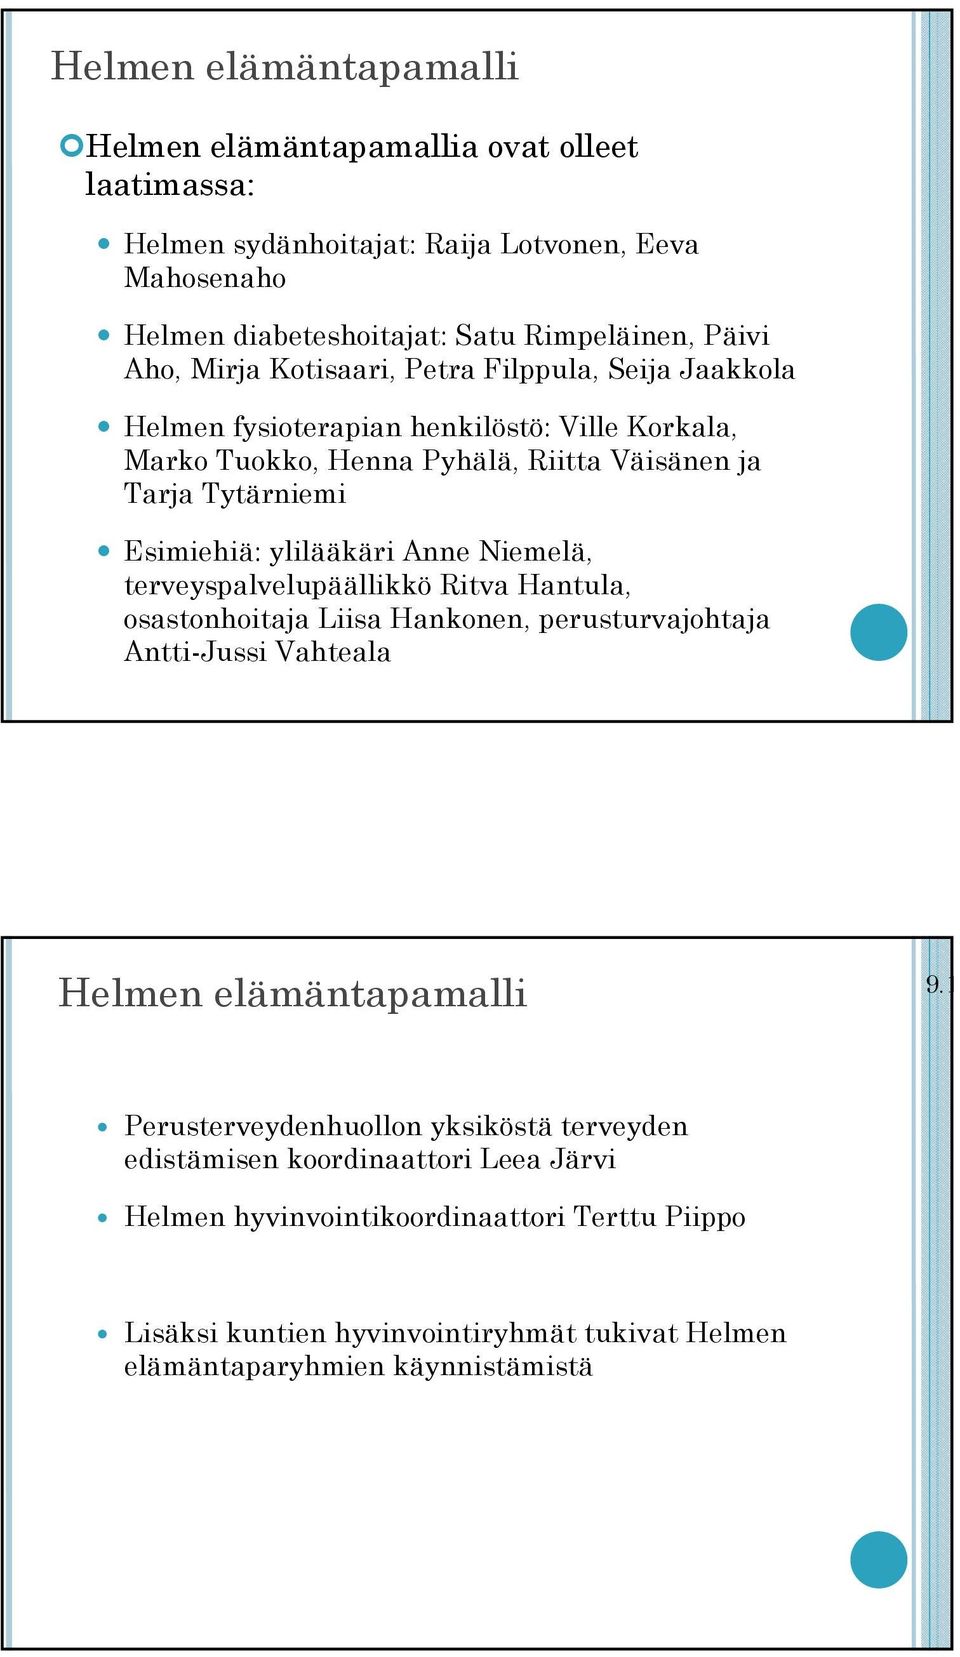 ylilääkäri Anne Niemelä, terveyspalvelupäällikkö Ritva Hantula, osastonhoitaja Liisa Hankonen, perusturvajohtaja Antti-Jussi Vahteala Helmen elämäntapamalli 9.